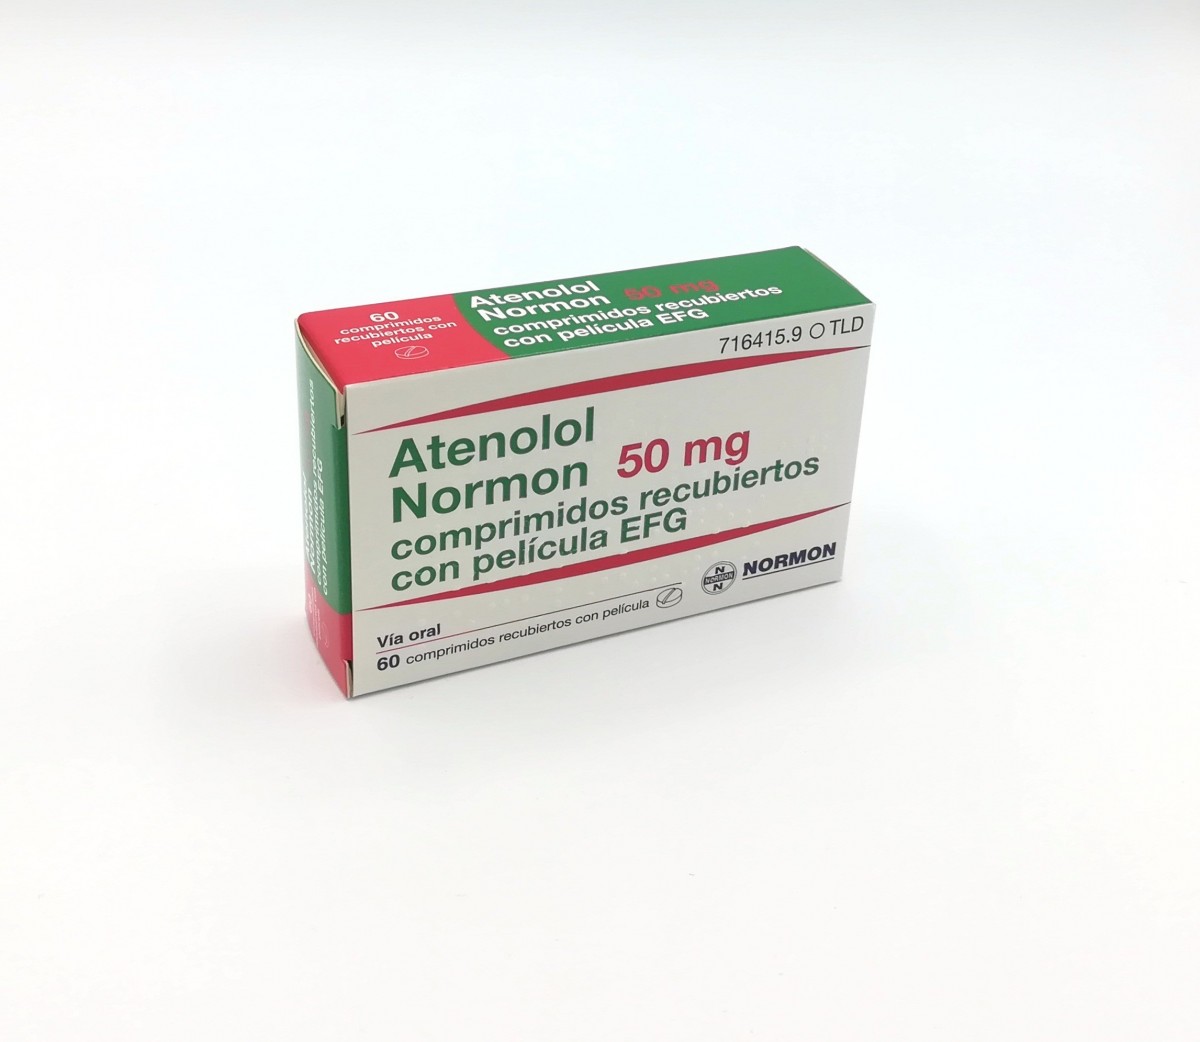 ATENOLOL NORMON 50 mg COMPRIMIDOS RECUBIERTOS EFG , 60 comprimidos fotografía del envase.